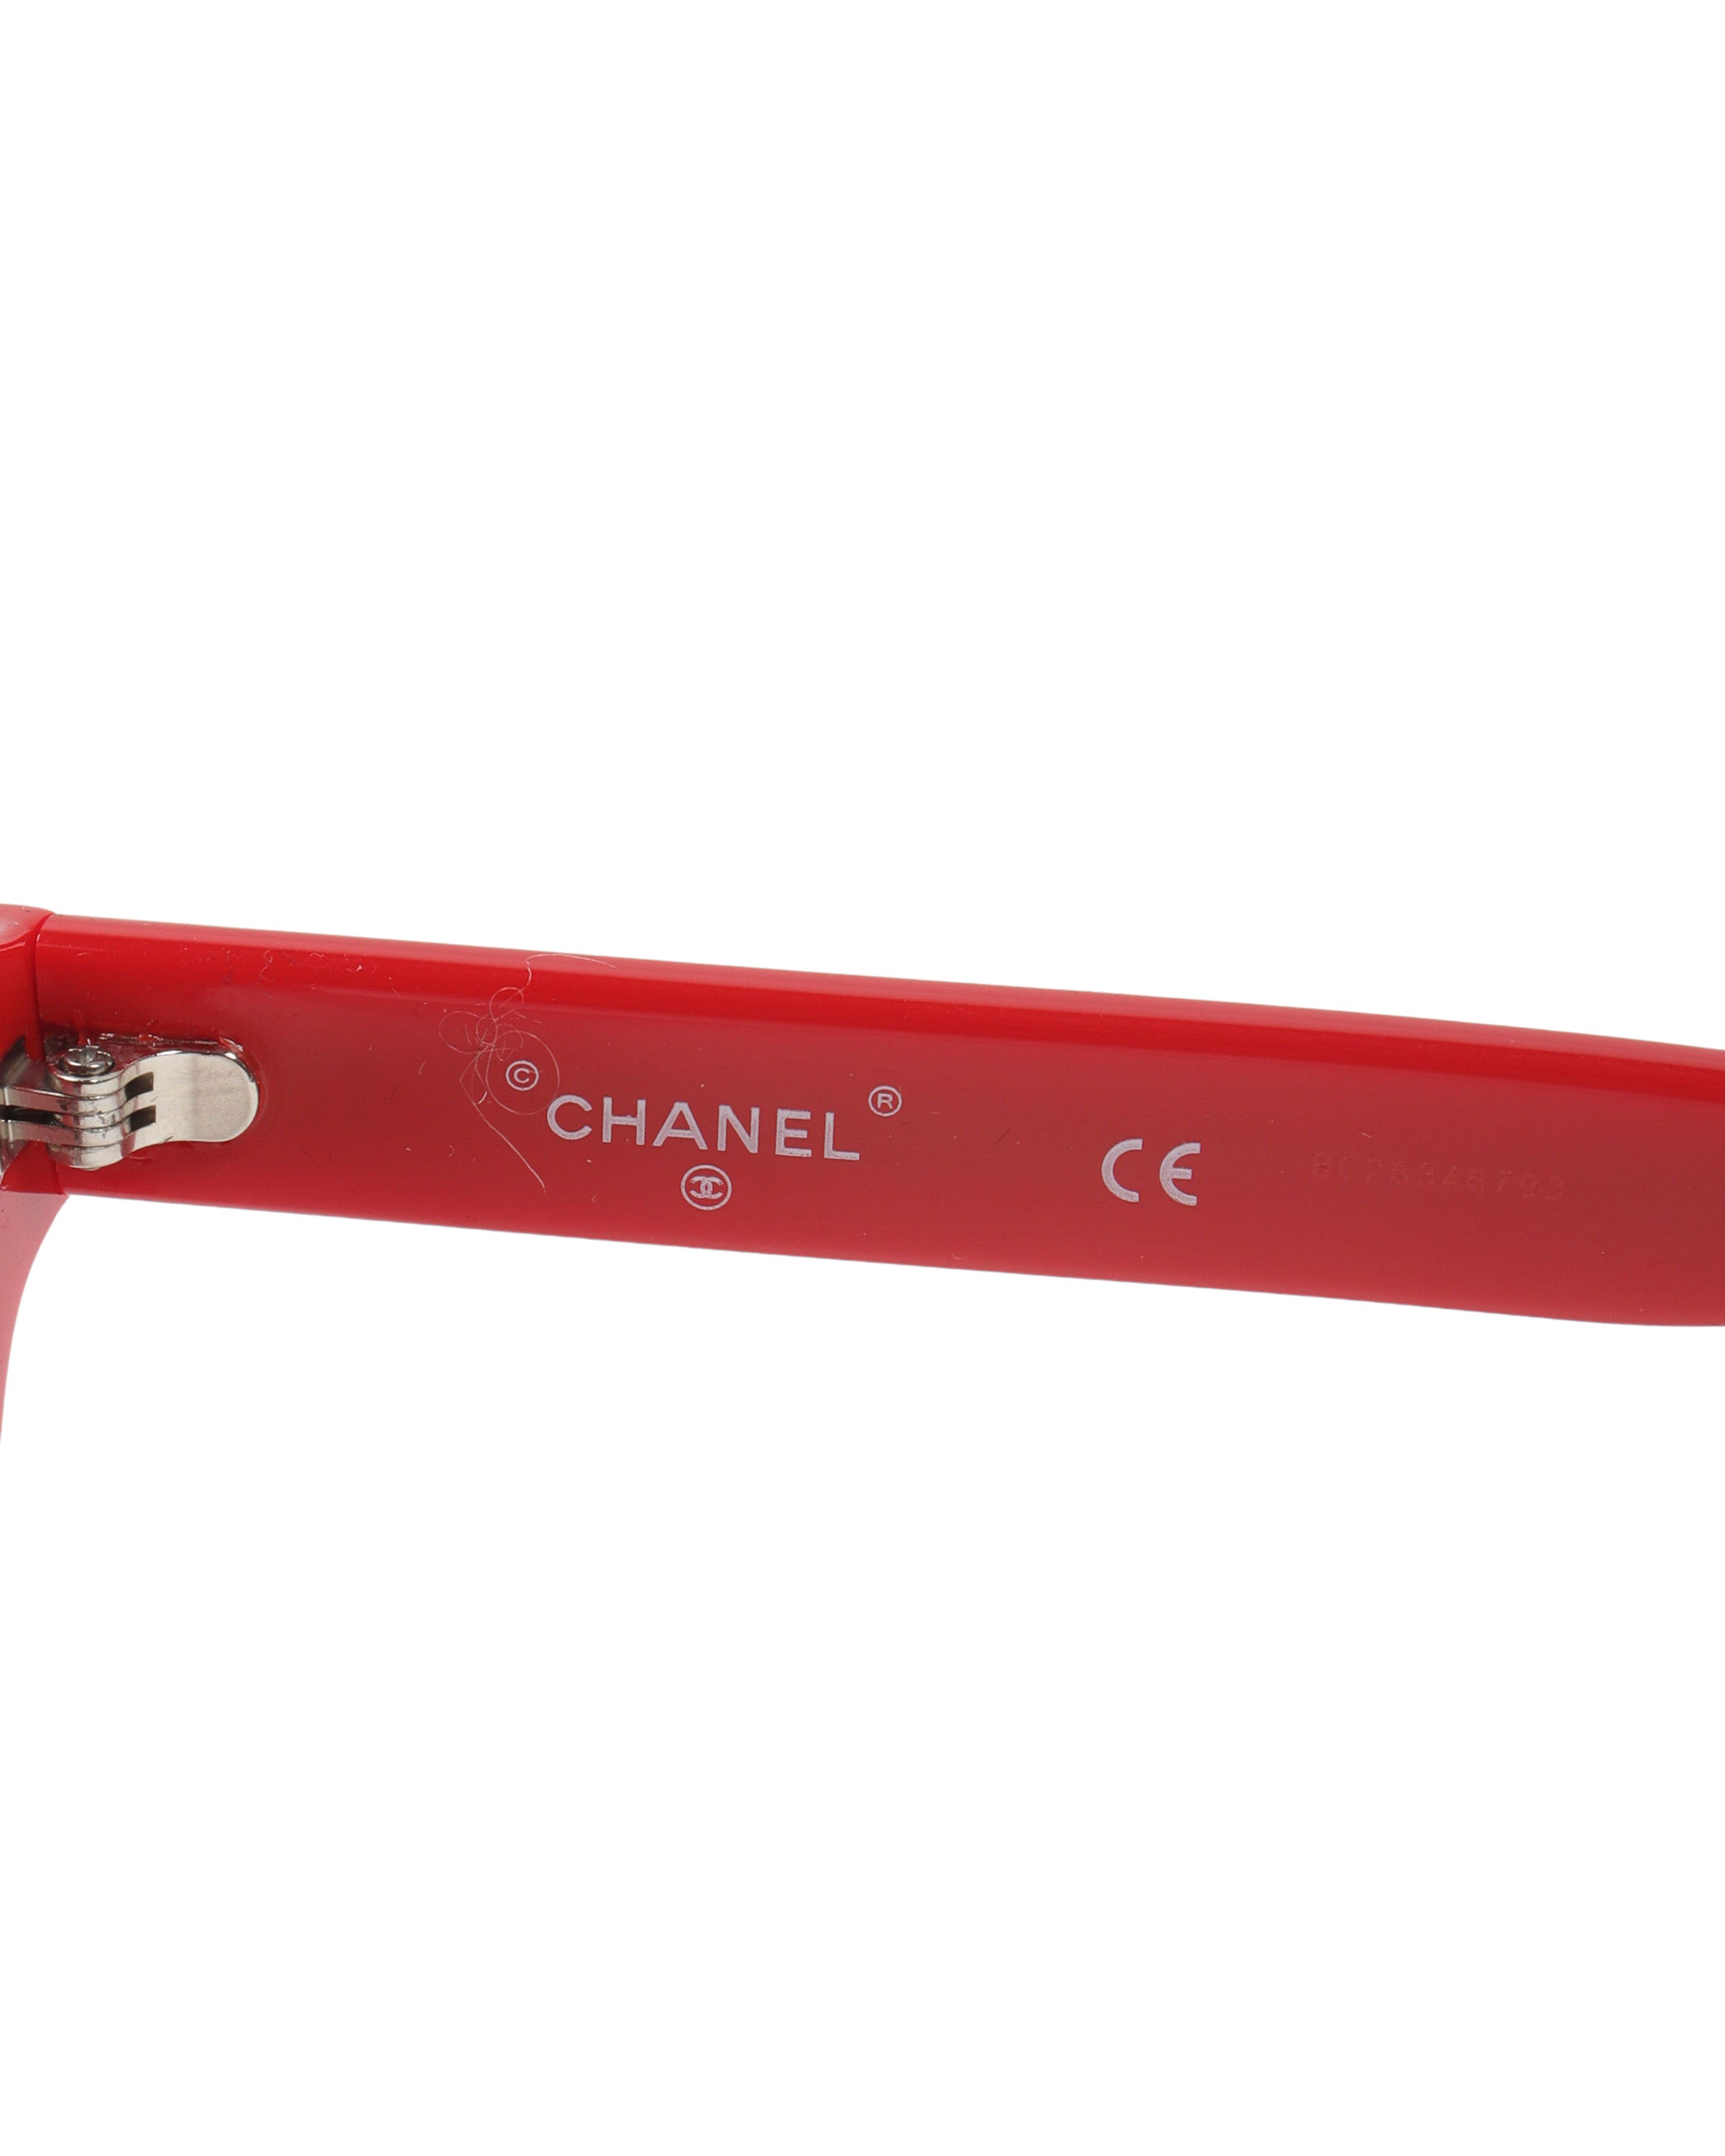 Pharrell Glasses